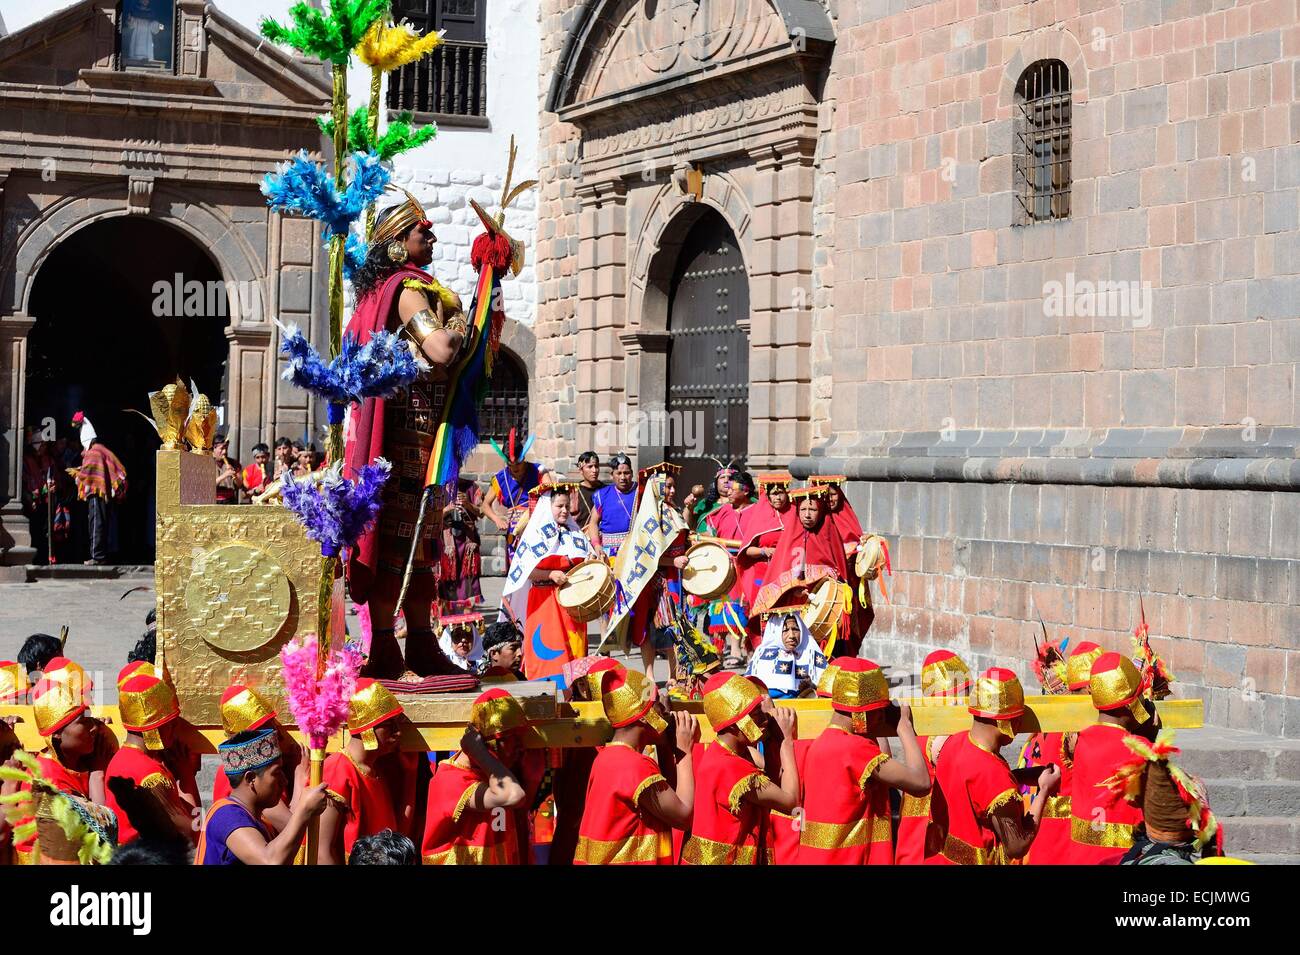 Le Pérou, Cuzco Cuzco, province, classé au Patrimoine Mondial de l'UNESCO, l'Inti Raymi, fête du Soleil, une importante célébration Inca qui a lieu tous les 24 juin dans le centre historique et Saqsayhuaman, marquant le solstice d'hiver et le début de la co Banque D'Images